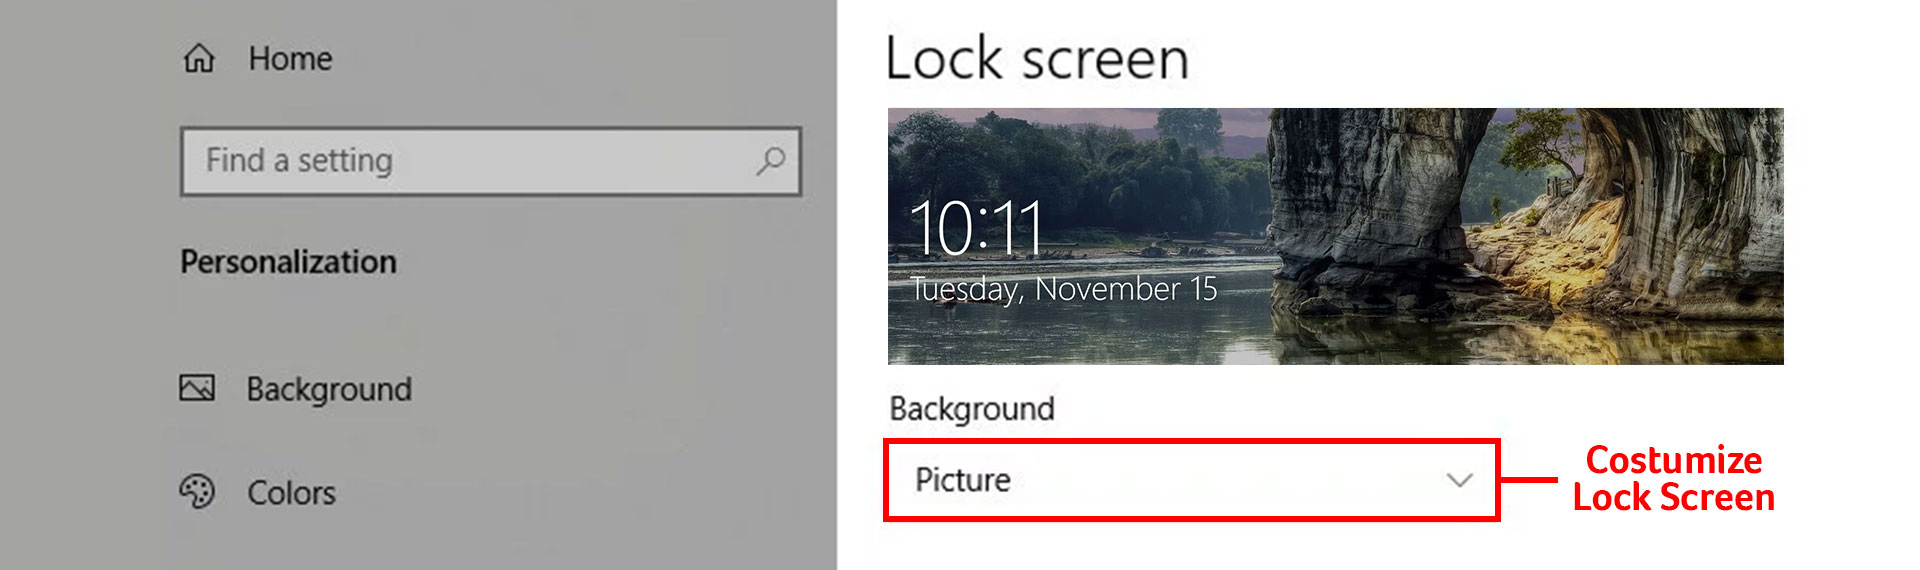 5 Cara Mengatur Windows 10 Lock Screen Lebih Fungsional dan Keren